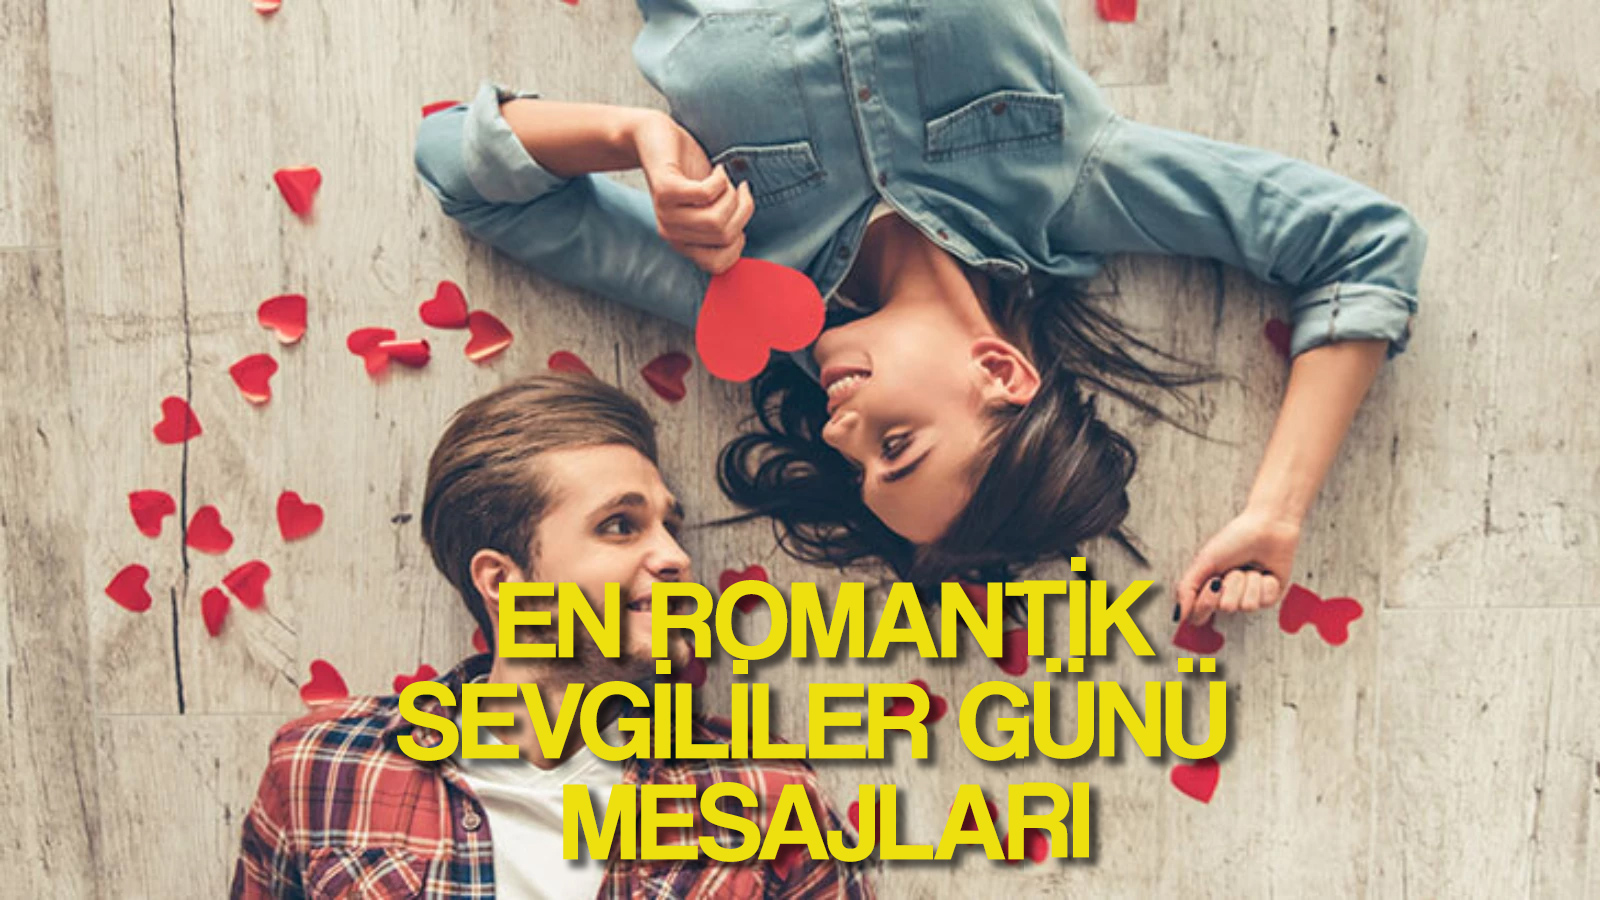 14 ŞUBAT SEVGİLİLER GÜNÜ MESAJLARI En romantik Sevgililer Günü Whatsapp sözleri